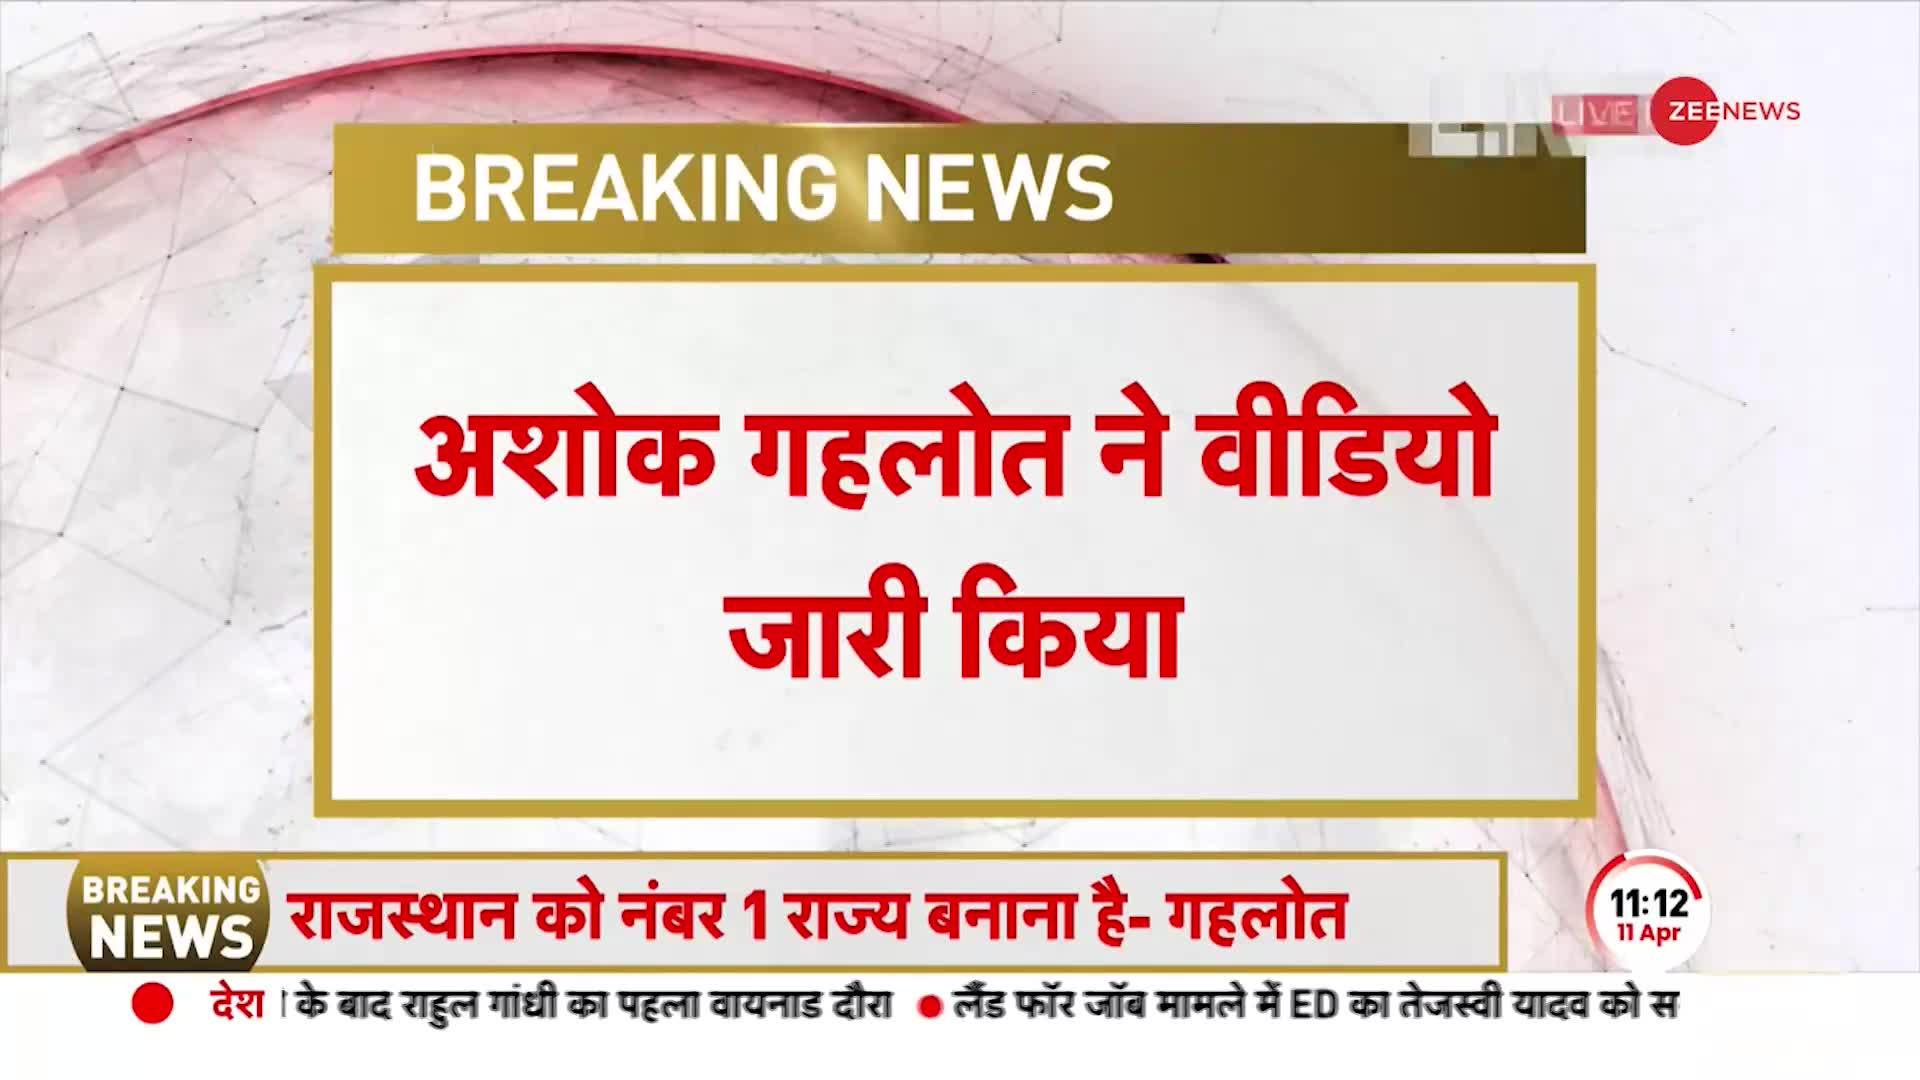 BREAKING NEWS: Ashok Gehlot ने वीडियो जारी किया है, कहा, '2030 तक राजस्थान नंबर-1 राज्य'